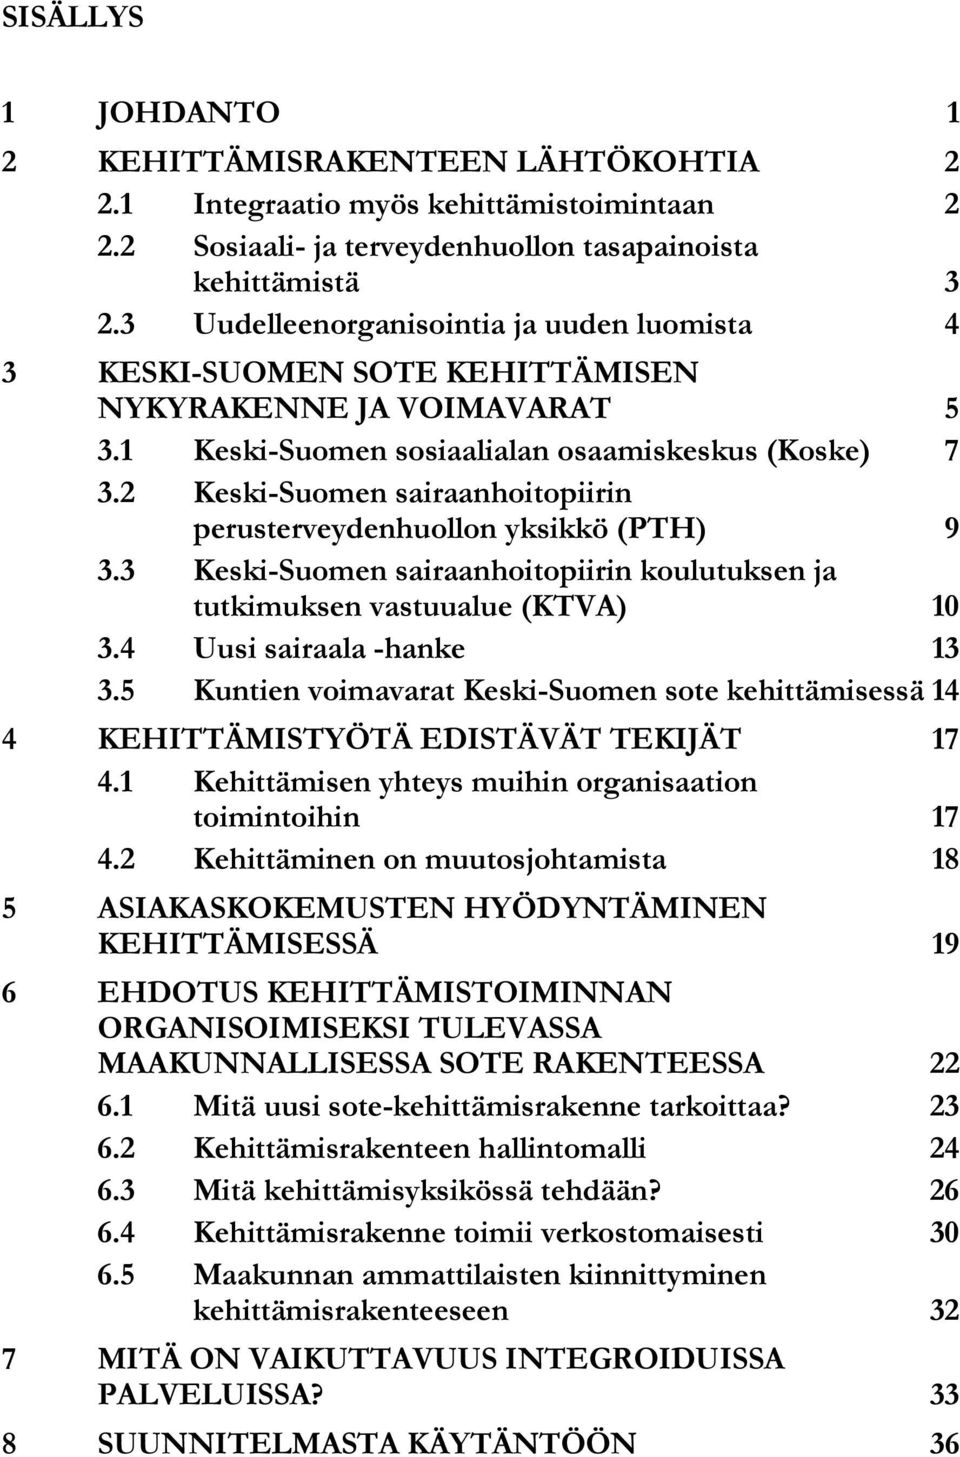 2 Keski-Suomen sairaanhoitopiirin perusterveydenhuollon yksikkö (PTH) 9 3.3 Keski-Suomen sairaanhoitopiirin koulutuksen ja tutkimuksen vastuualue (KTVA) 10 3.4 Uusi sairaala -hanke 13 3.